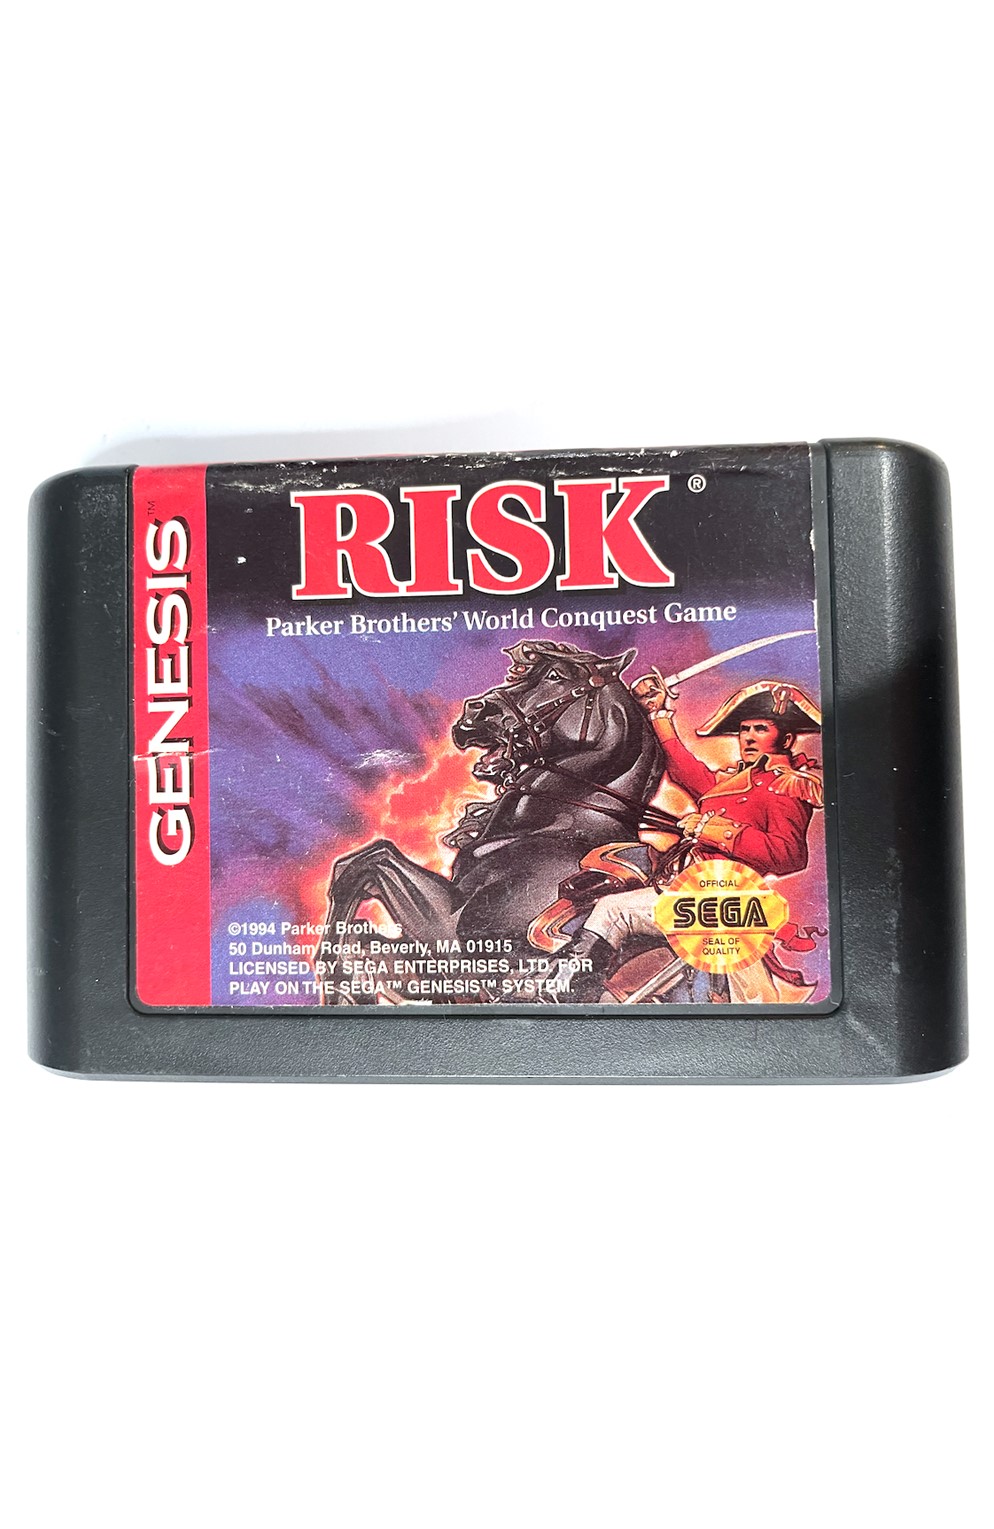 Sega Genesis Risk Pre-Owned